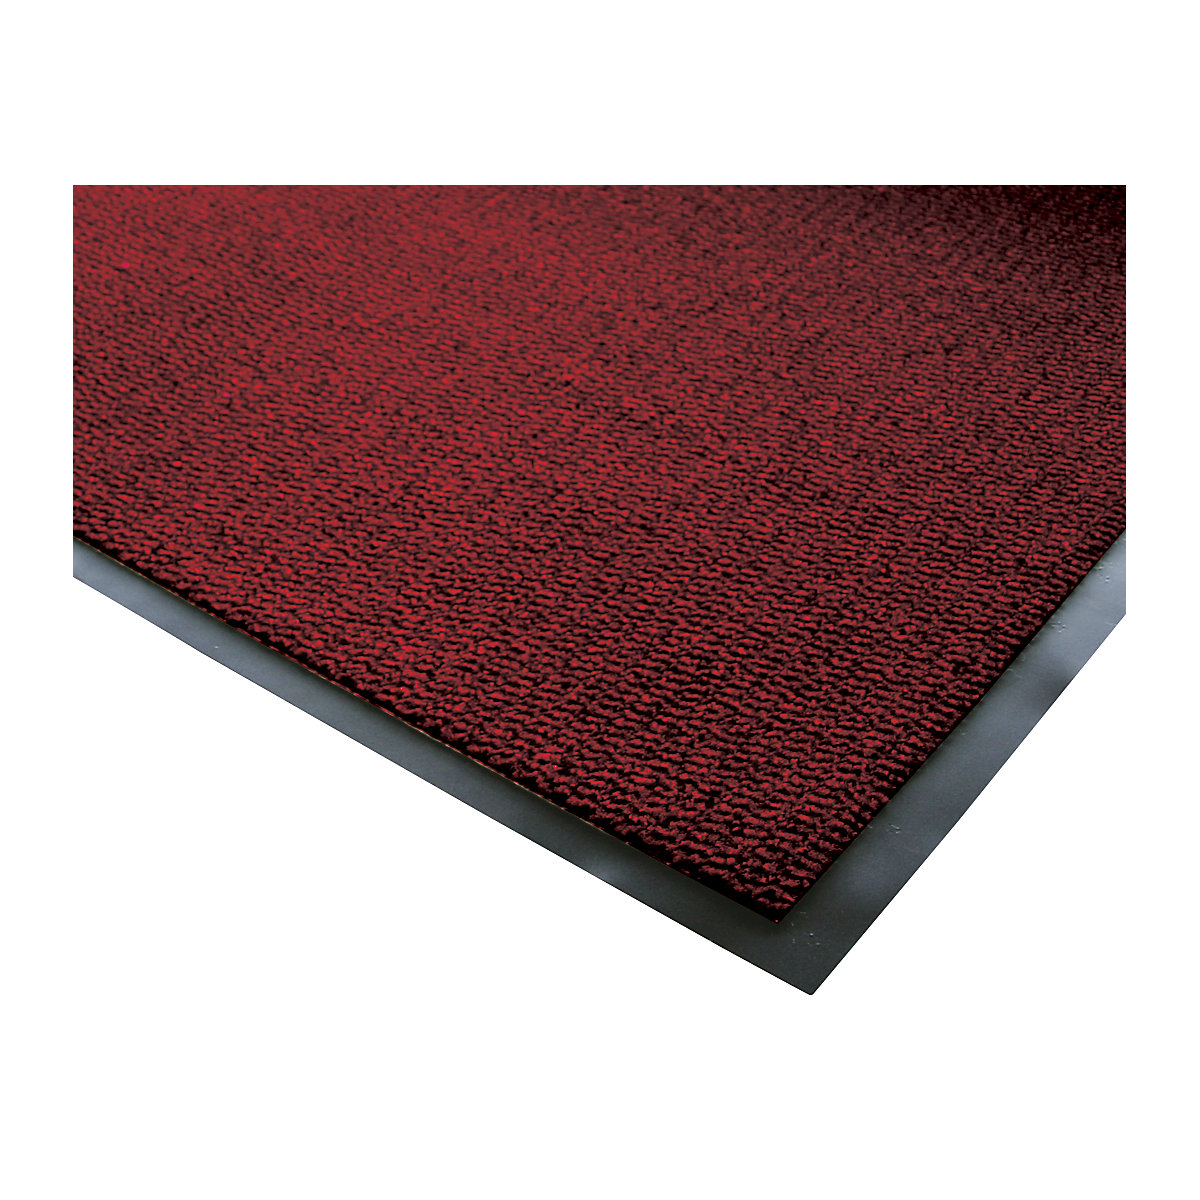 Mata wychwytująca brud do stosowania wewnątrz, runo z polipropylenu, dł. x szer. 1500 x 900 mm, czarny / czerwony